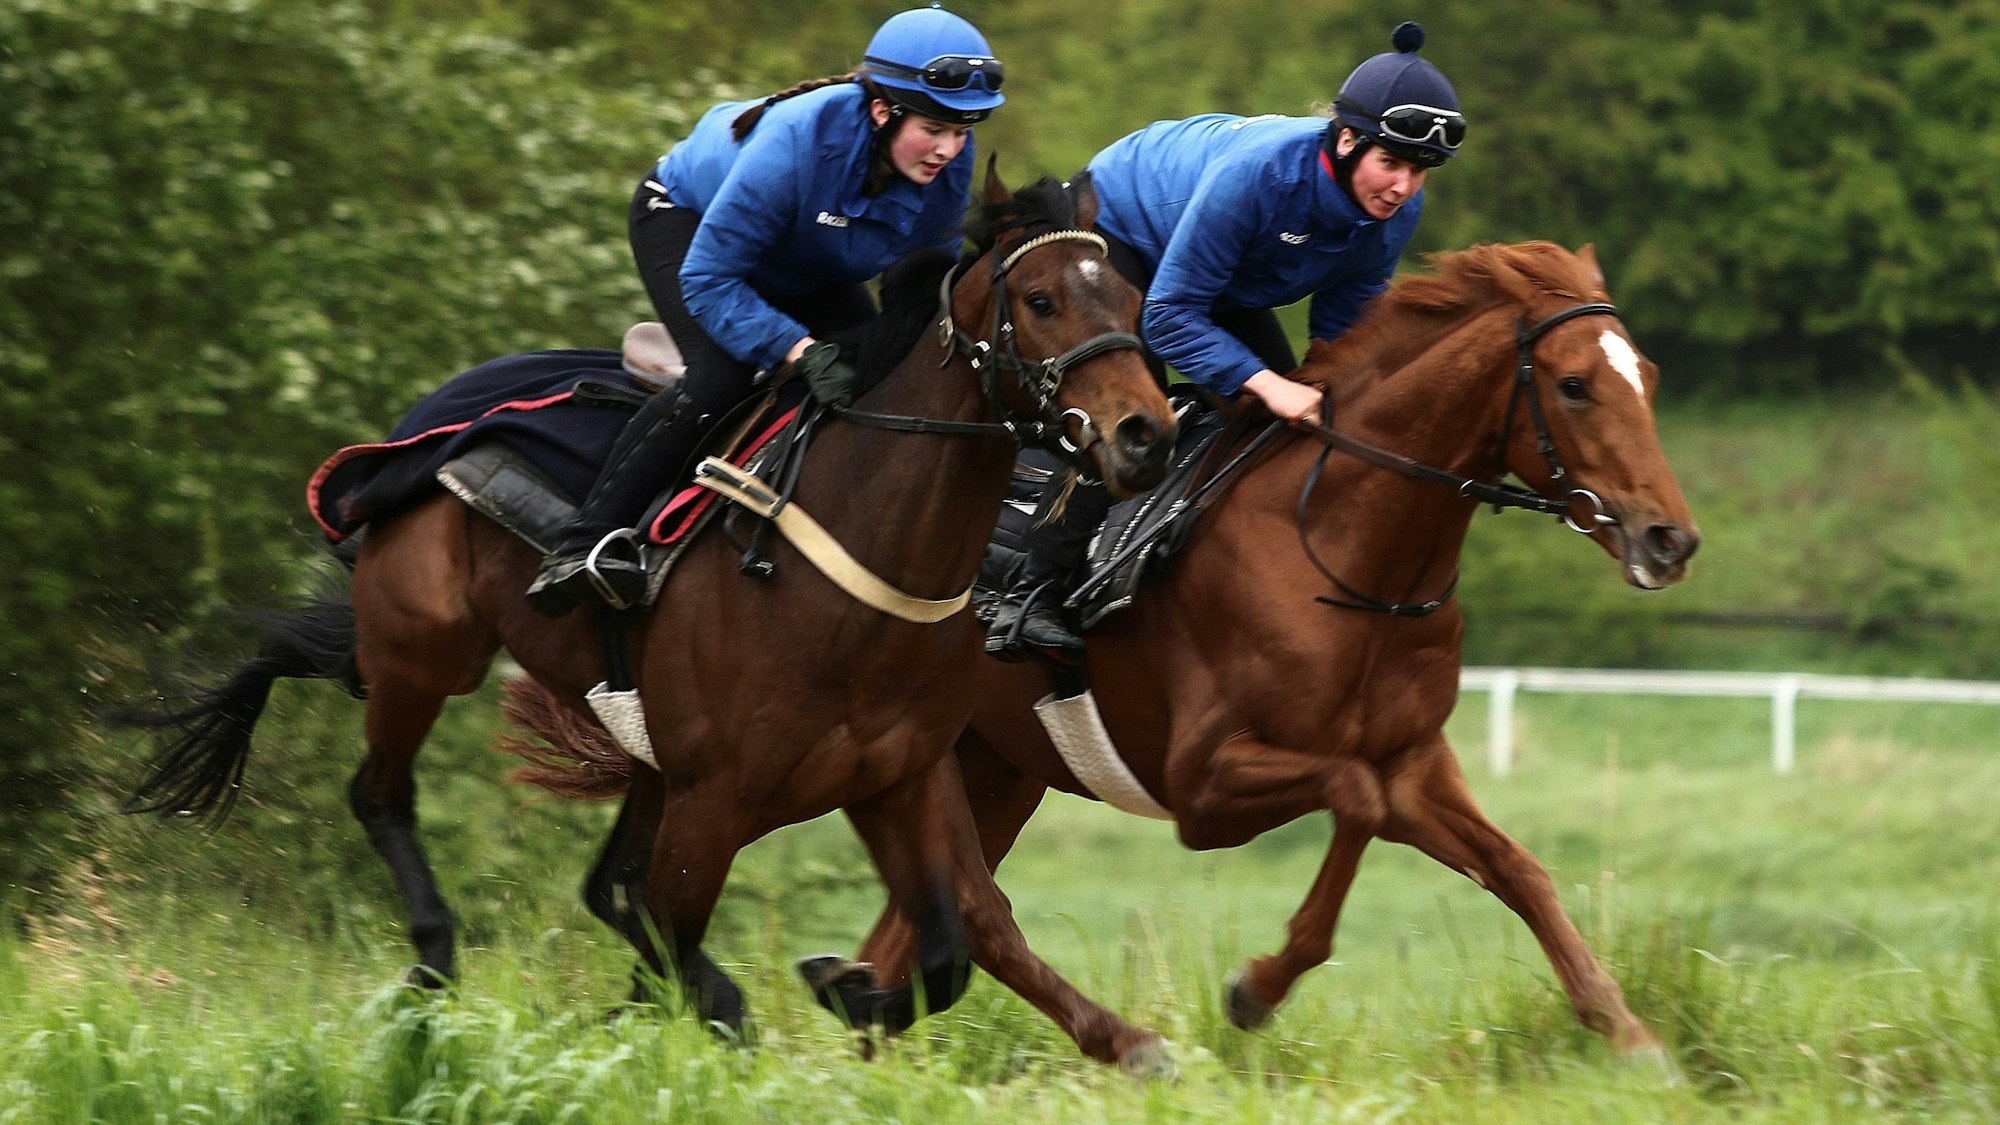 Zwei Jockeys sind auf Pferden in schnellen Tempo unterwegs. Im Hintergrund sieht man die Umrandungen einer Rennstrecke.